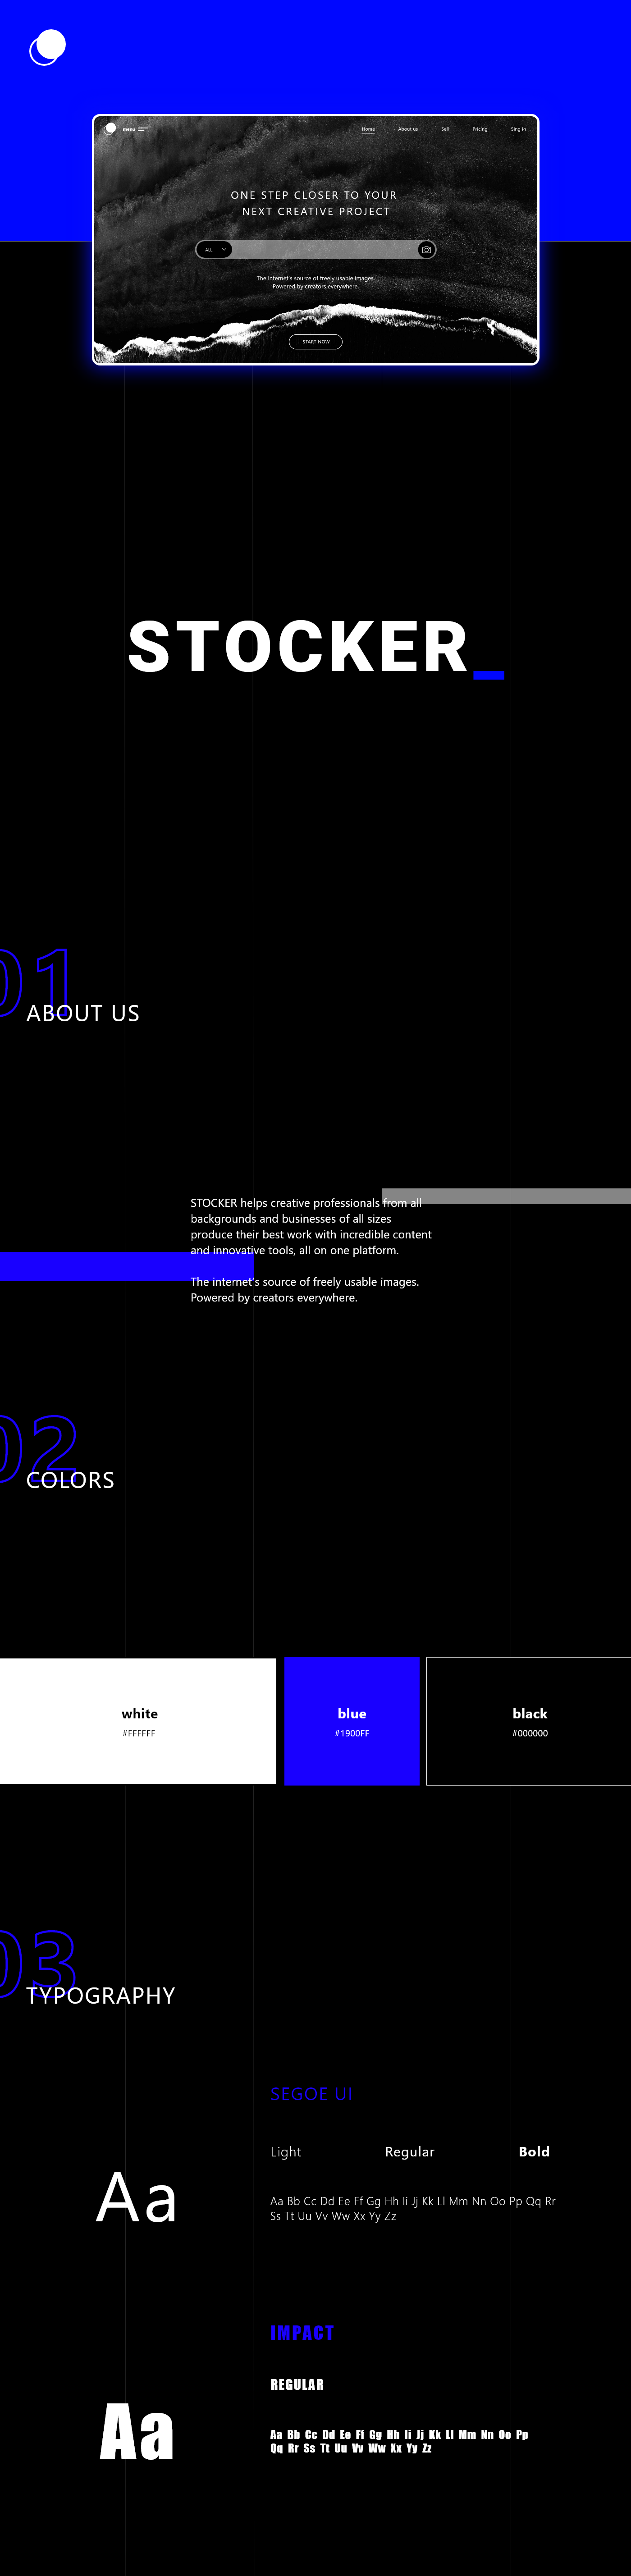 #UIDesign #uxdesign #website #websitedesign